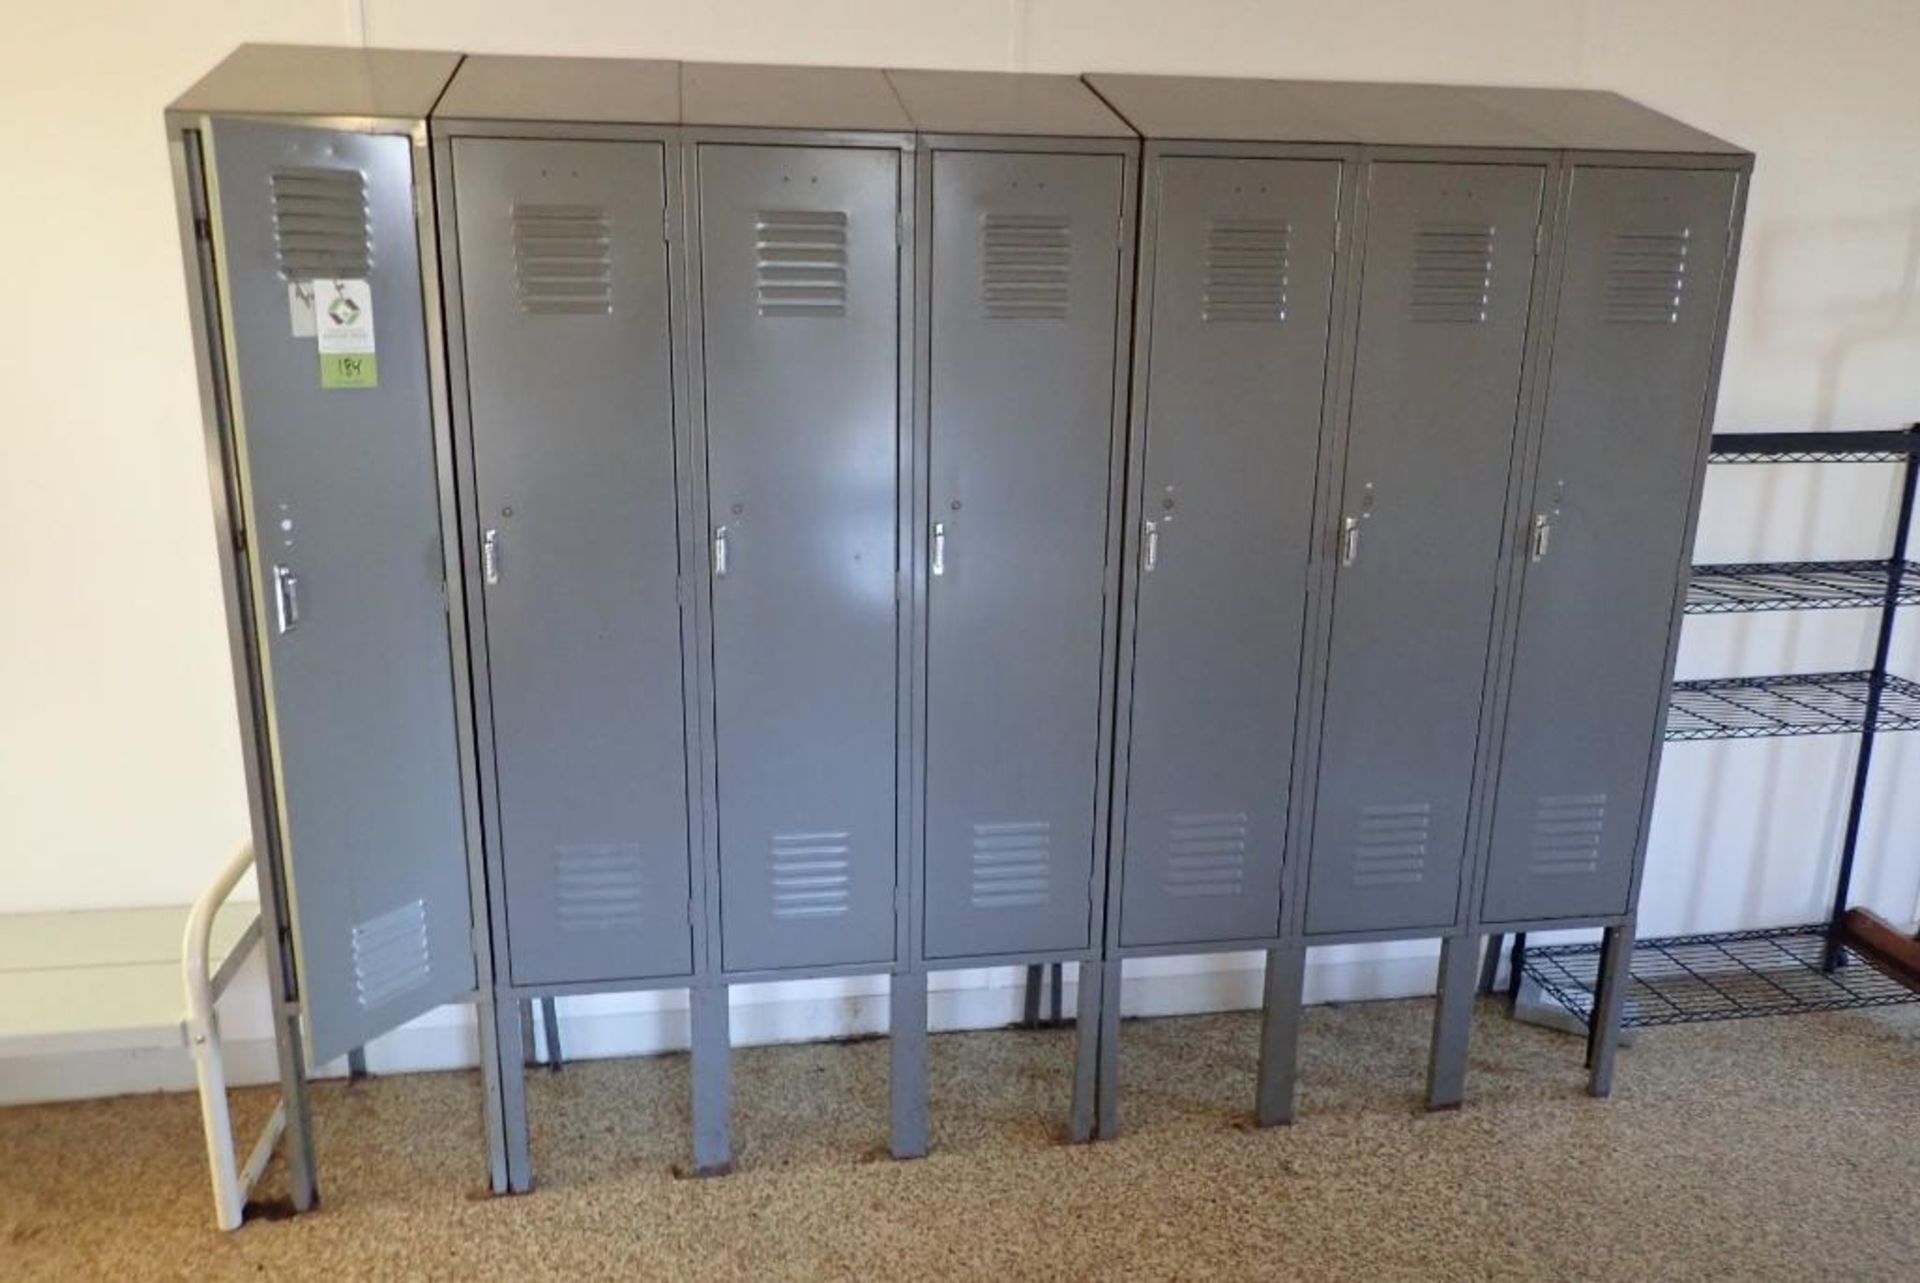 (7) mild steel lockers